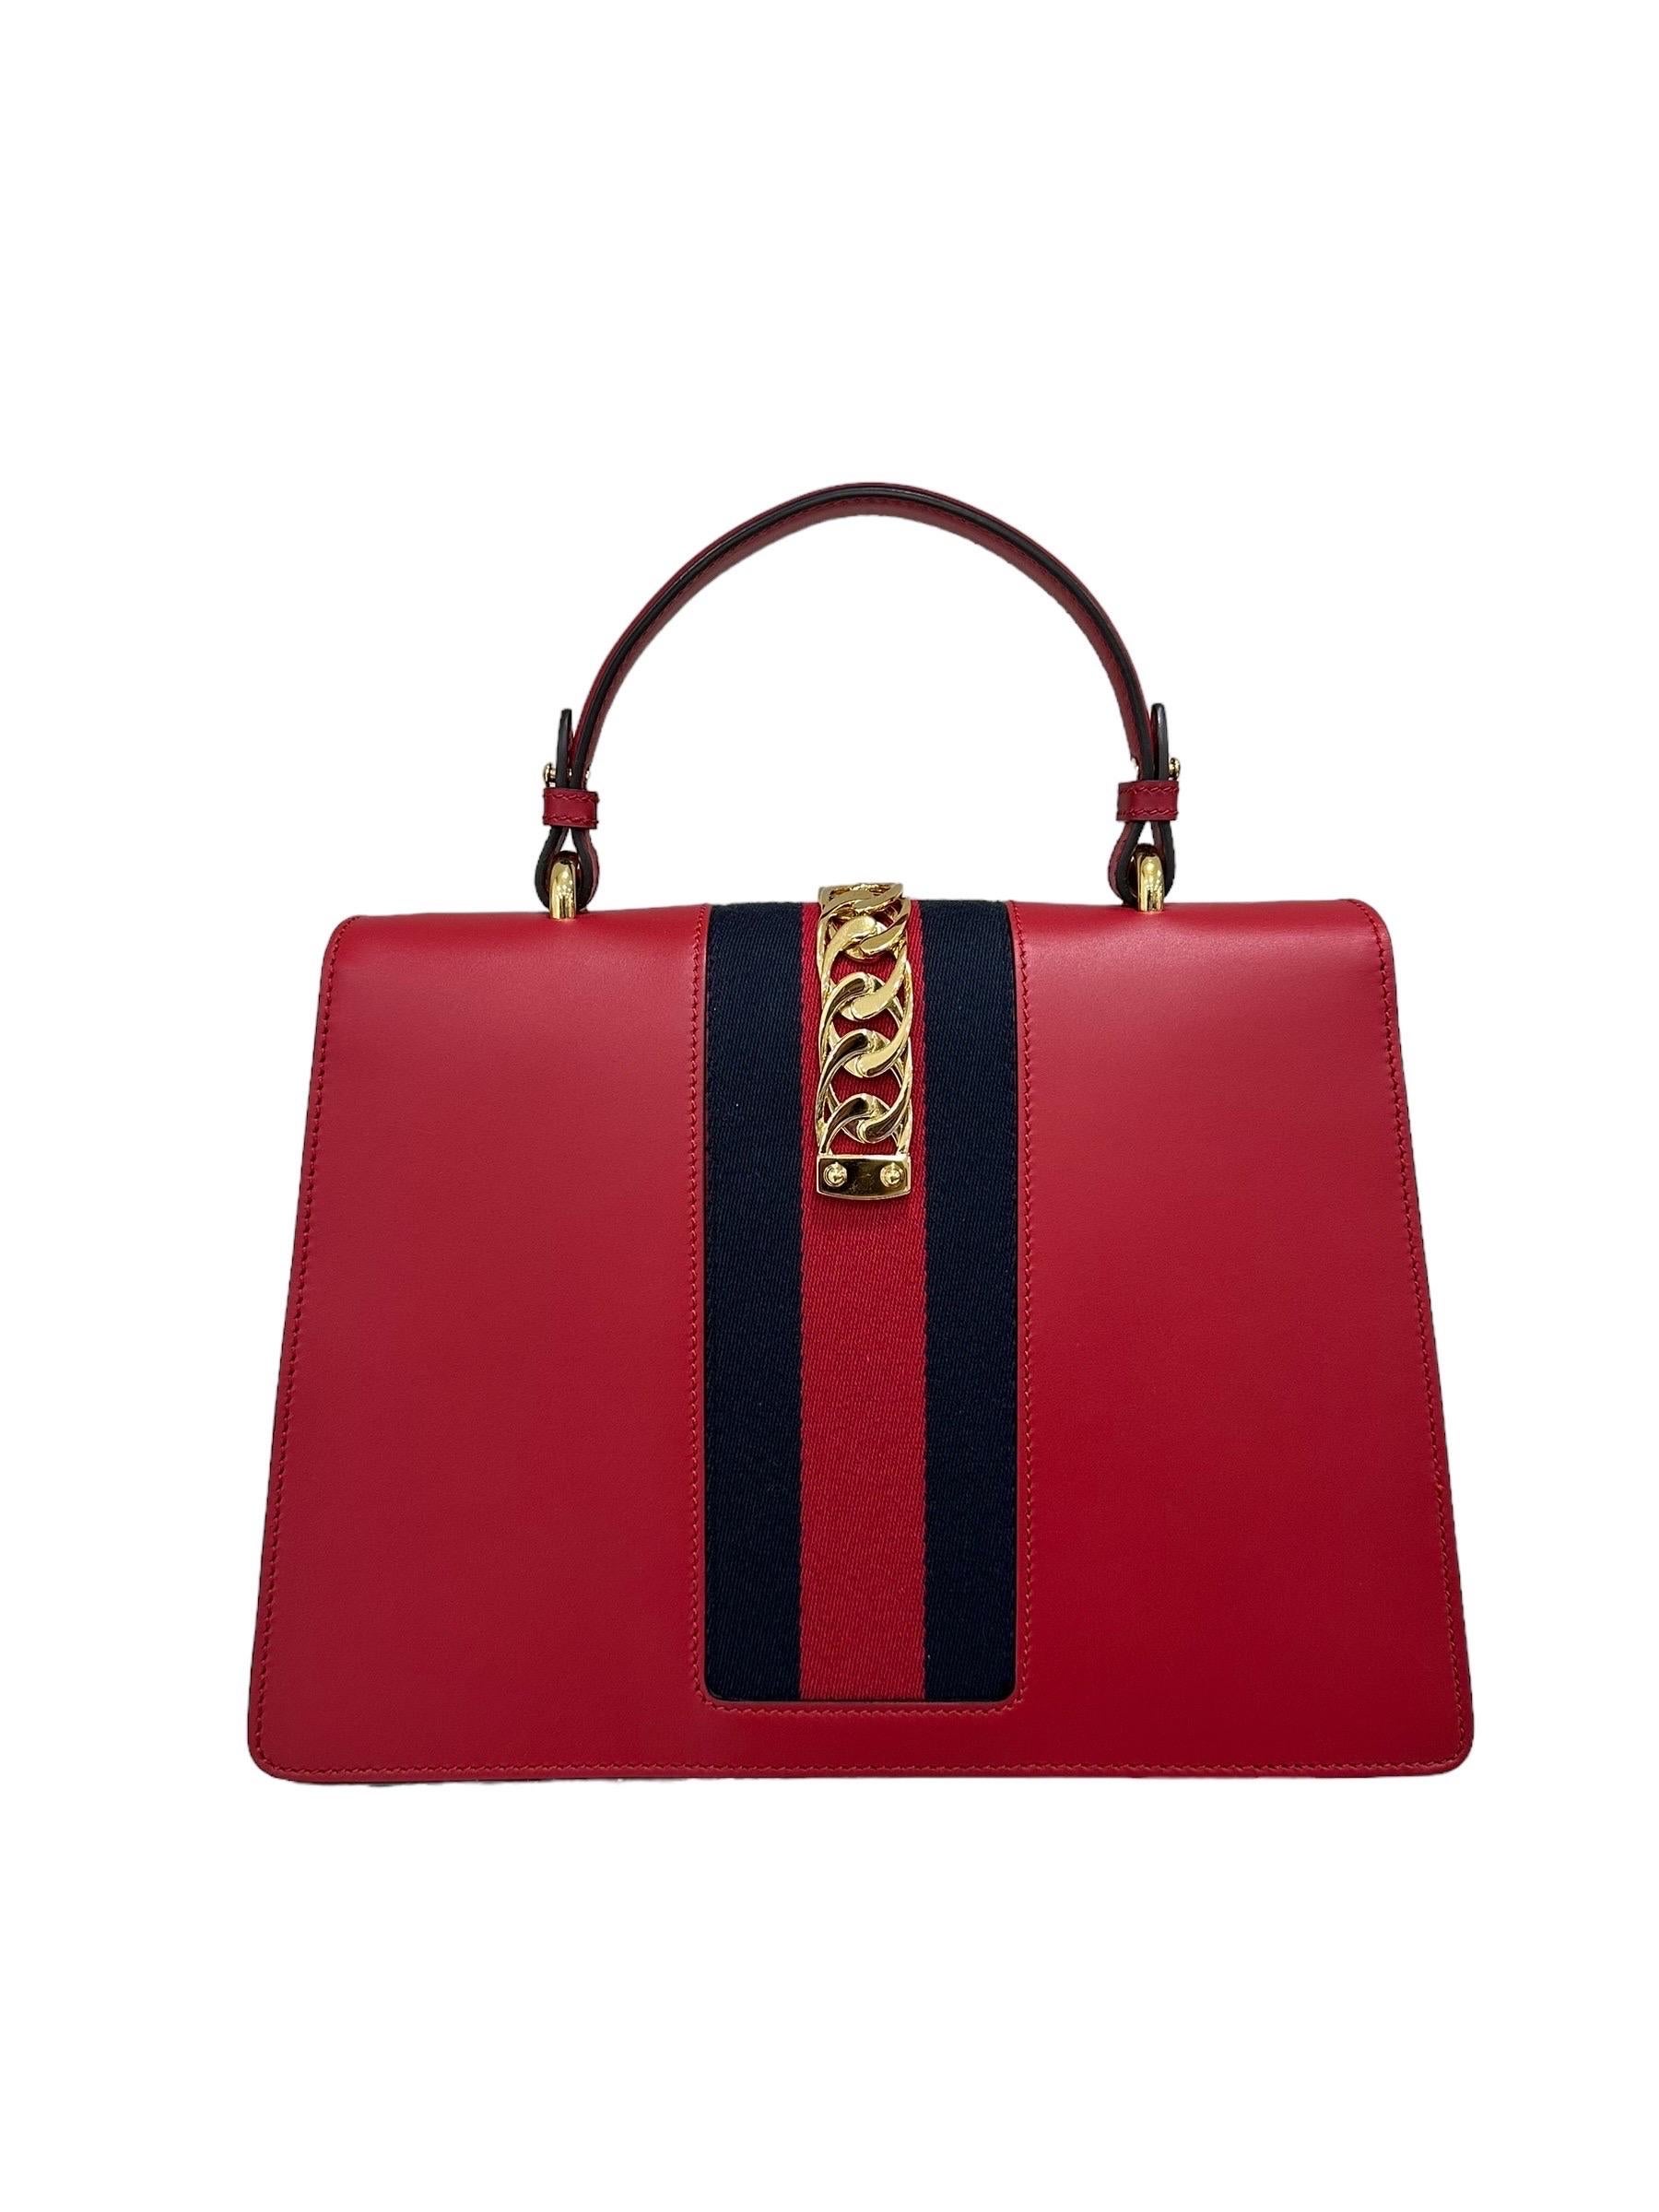 Gucci Sylvie Media Borsa a Tracolla pelle Rossa  For Sale 4